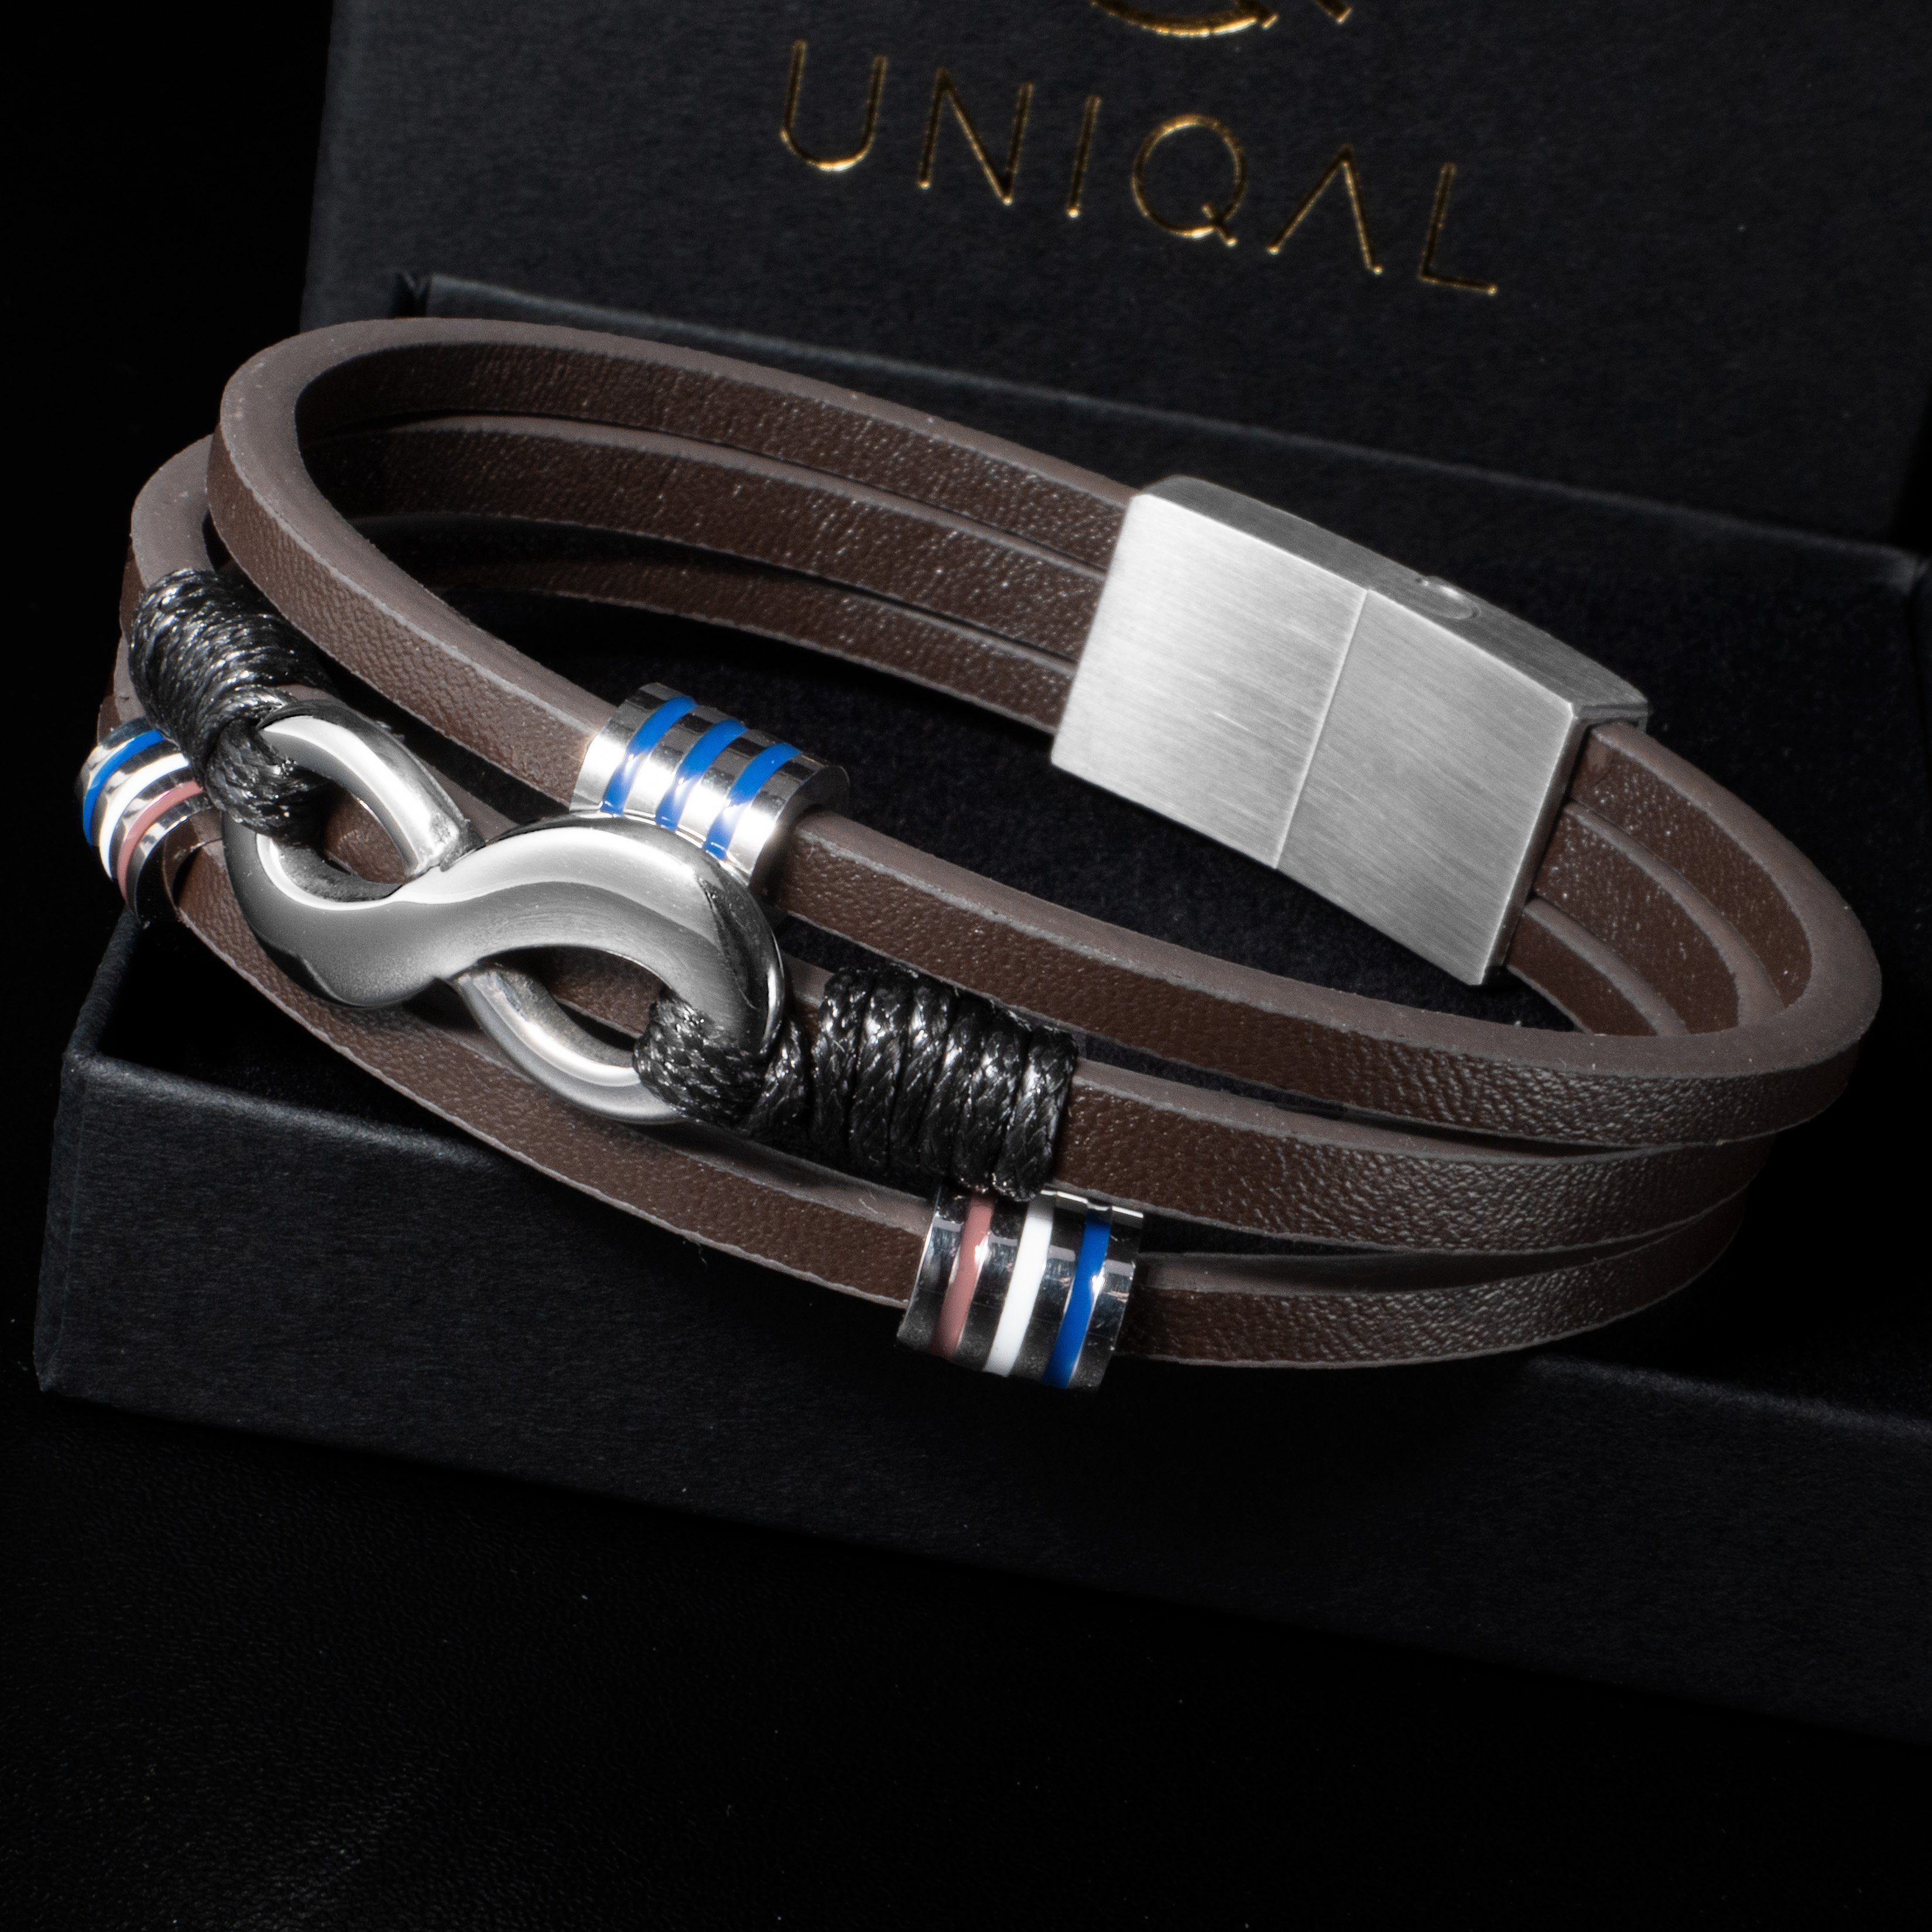 Leder (Unendlichkeitszeichen, Herren Lederarmband Designed "EIGHT in SILVER" Armband Leder, Edelsthal, UNIQAL.de Unendlichkeit handgefertigt), Germany